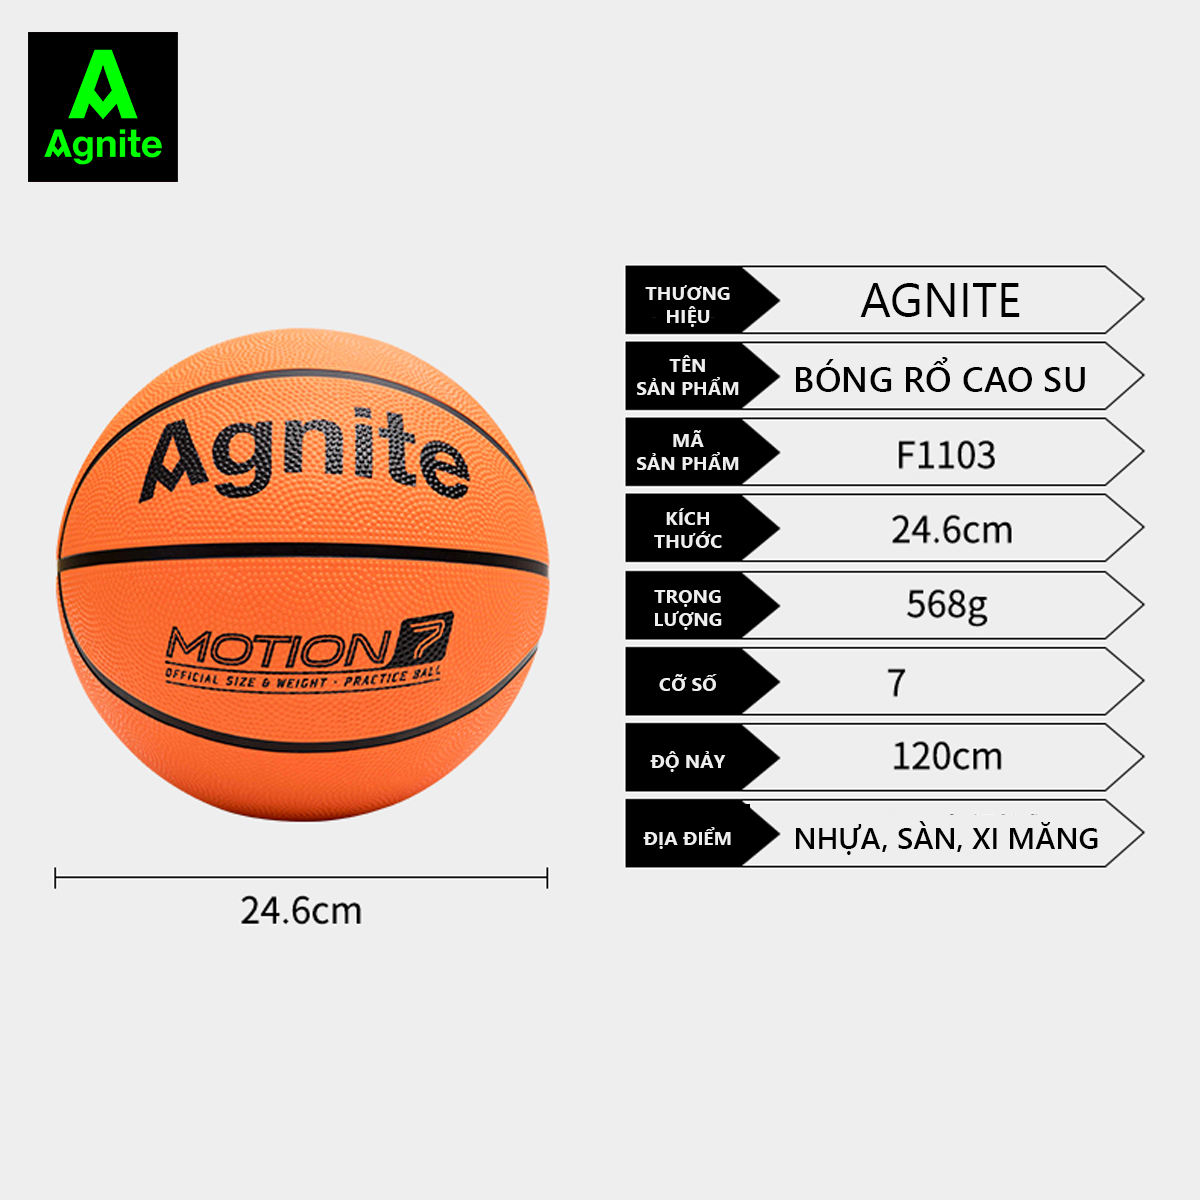 Quả bóng rổ cao su cỡ số 7 Agnite - Cao su chống bẩn, không mòn, bền, cho người chơi thể thao chuyên nghiệp - Hàng chính hãng - F1103